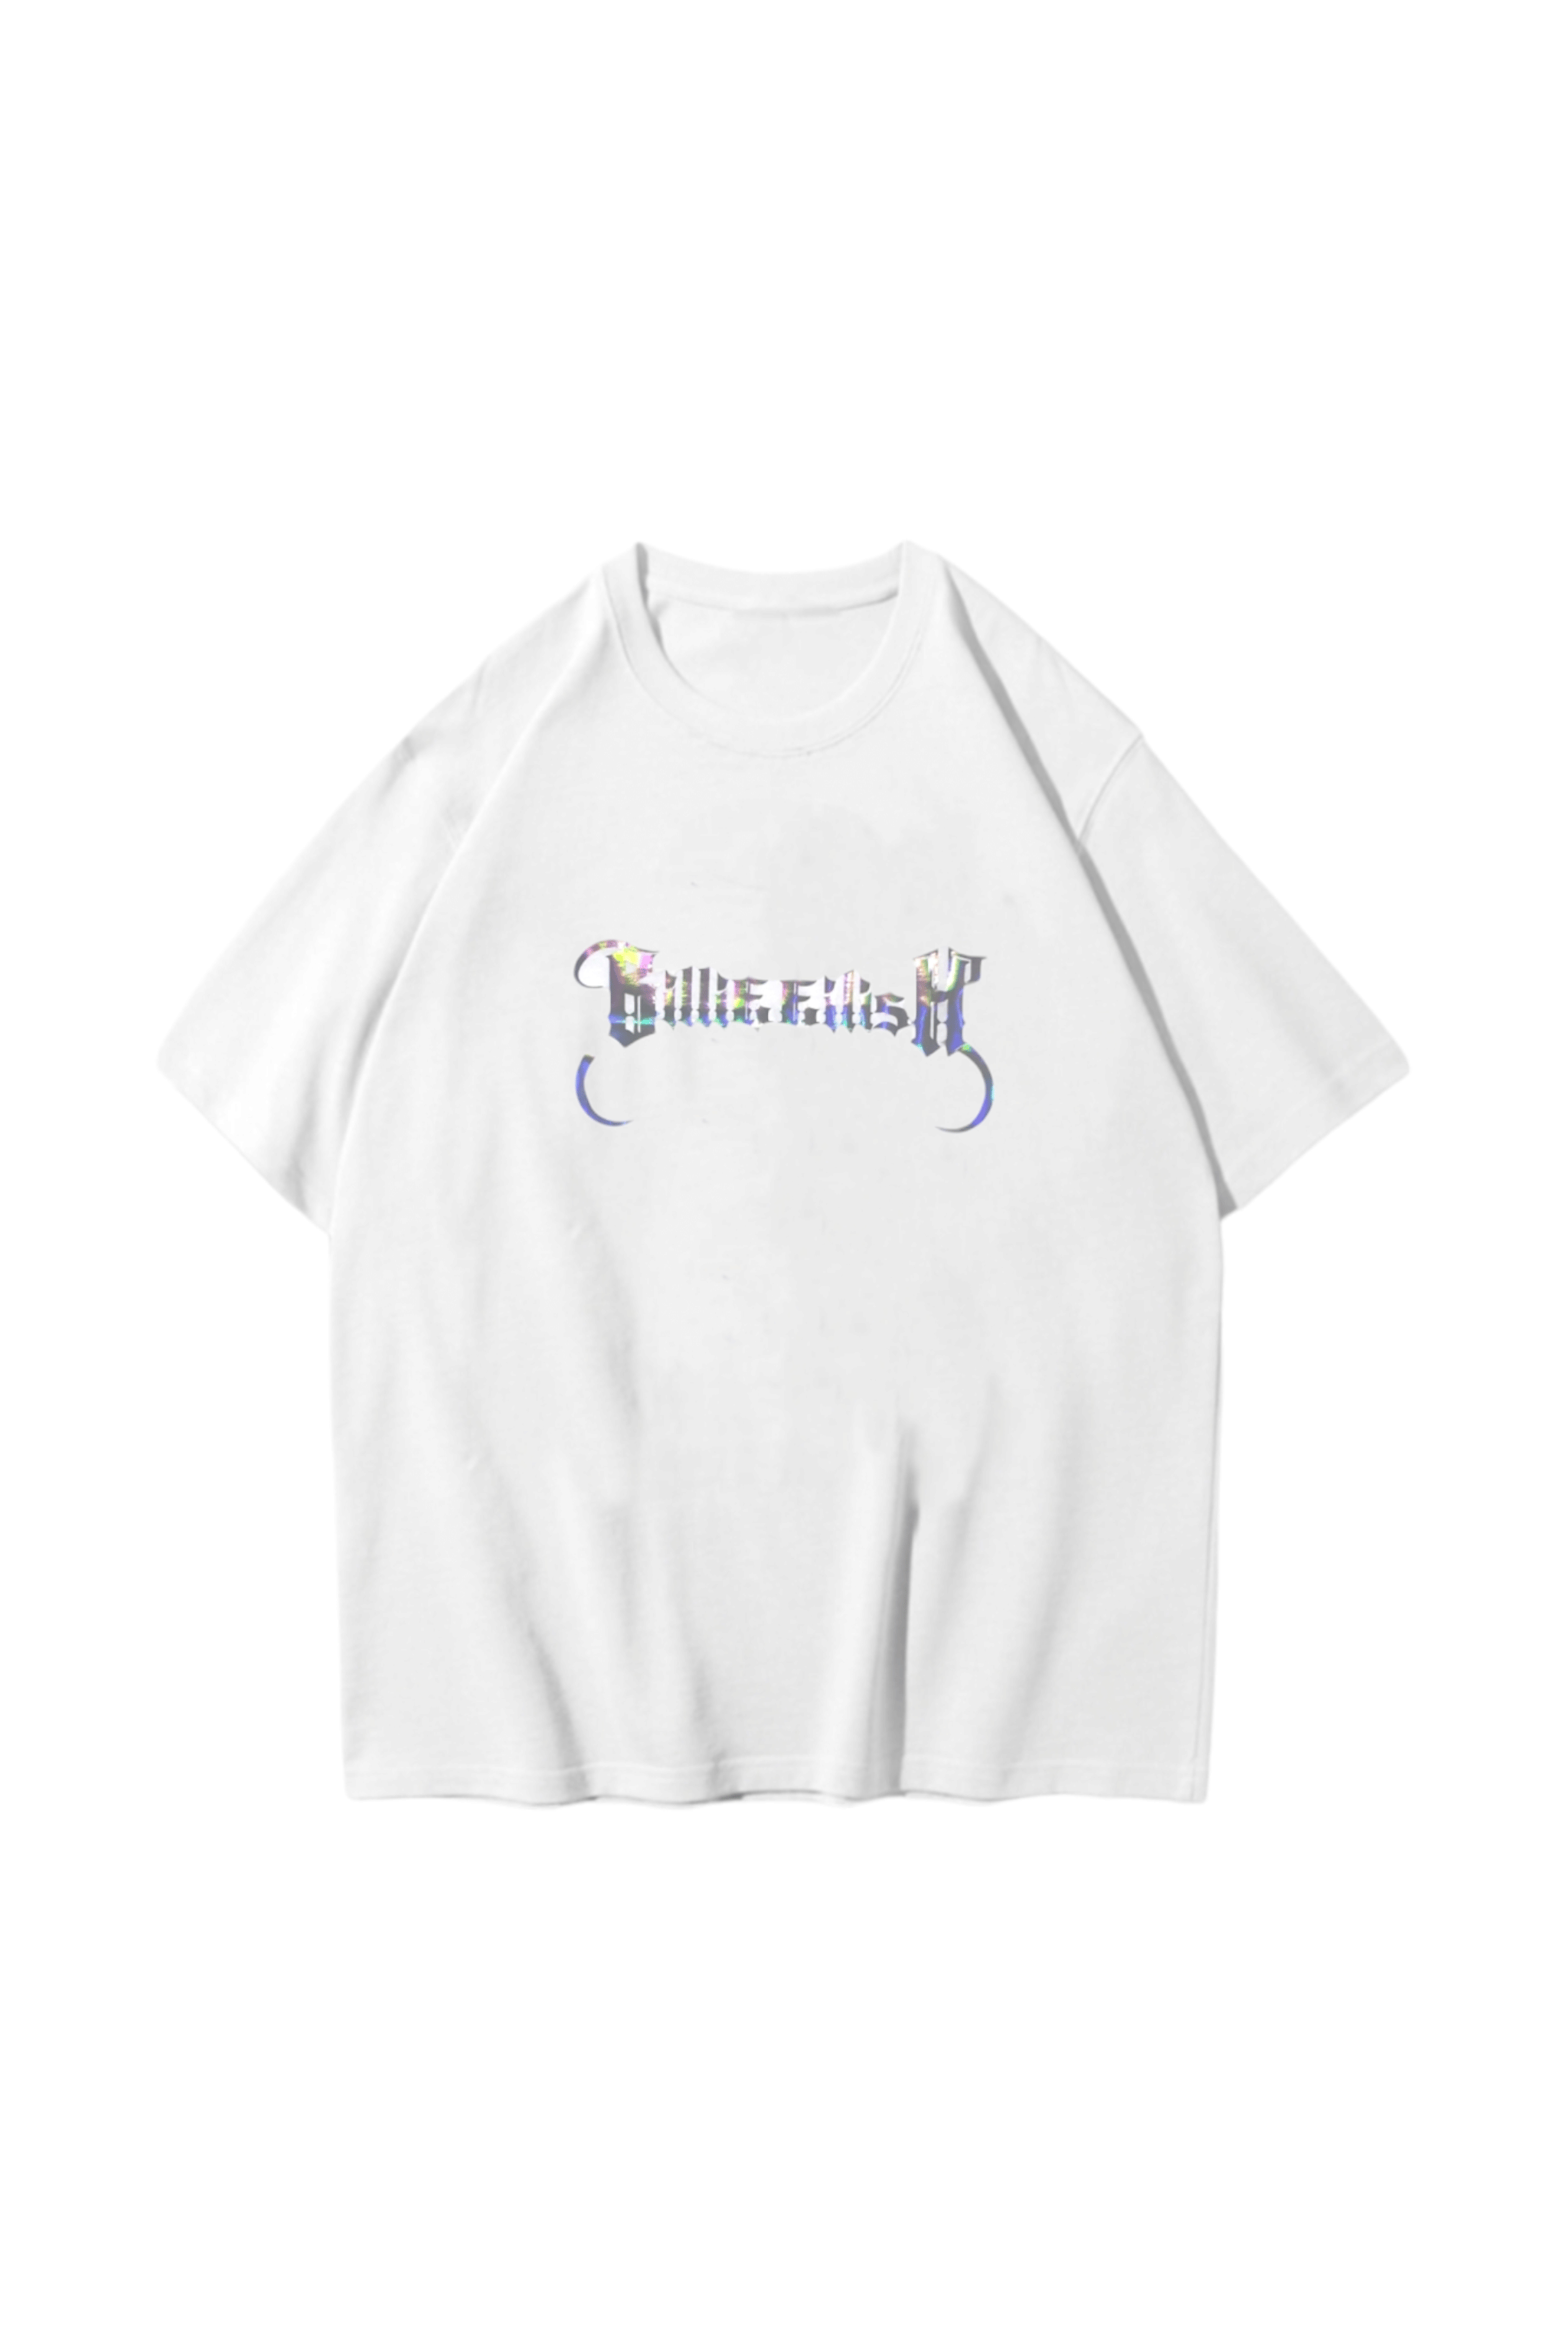 Hologram Billie Eilish T-shirt Ürününü Hemen İncele